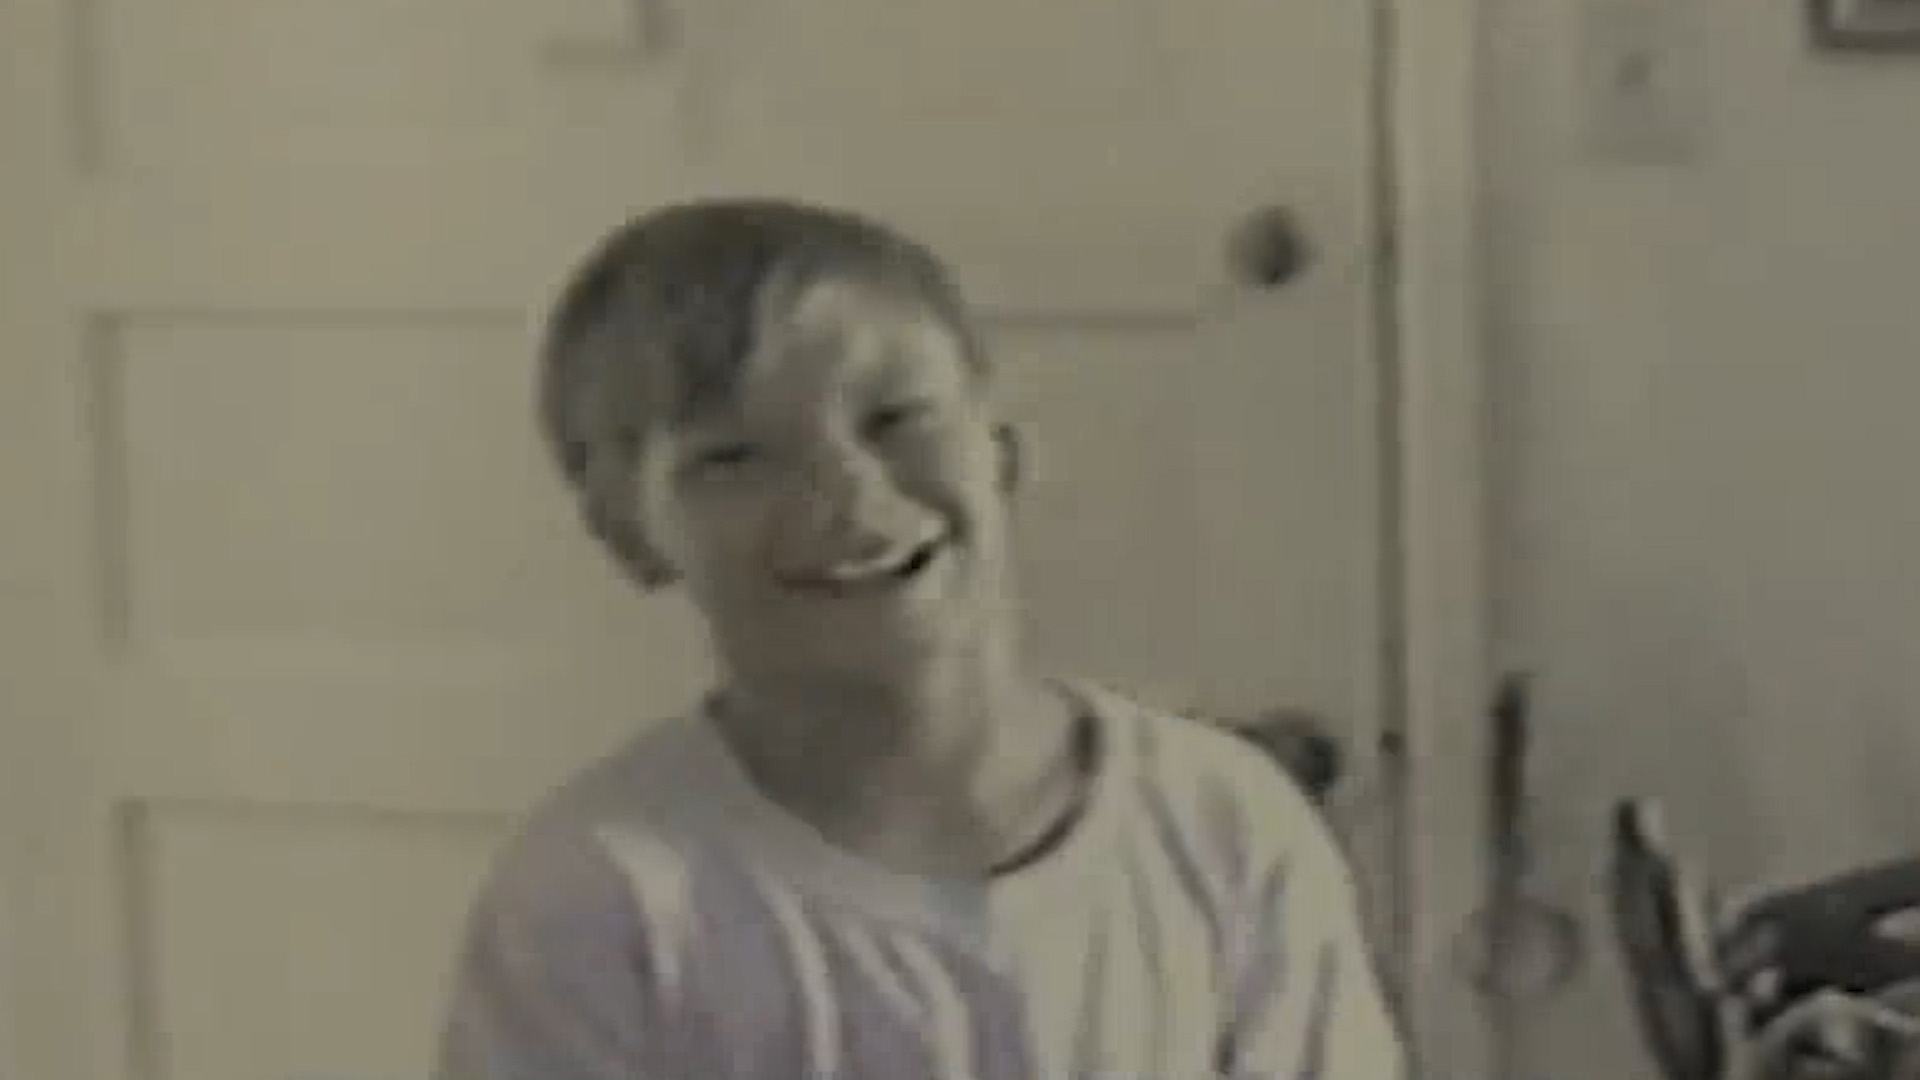 Nicholas Barclay tenía 13 años cuando desapareció de su hogar